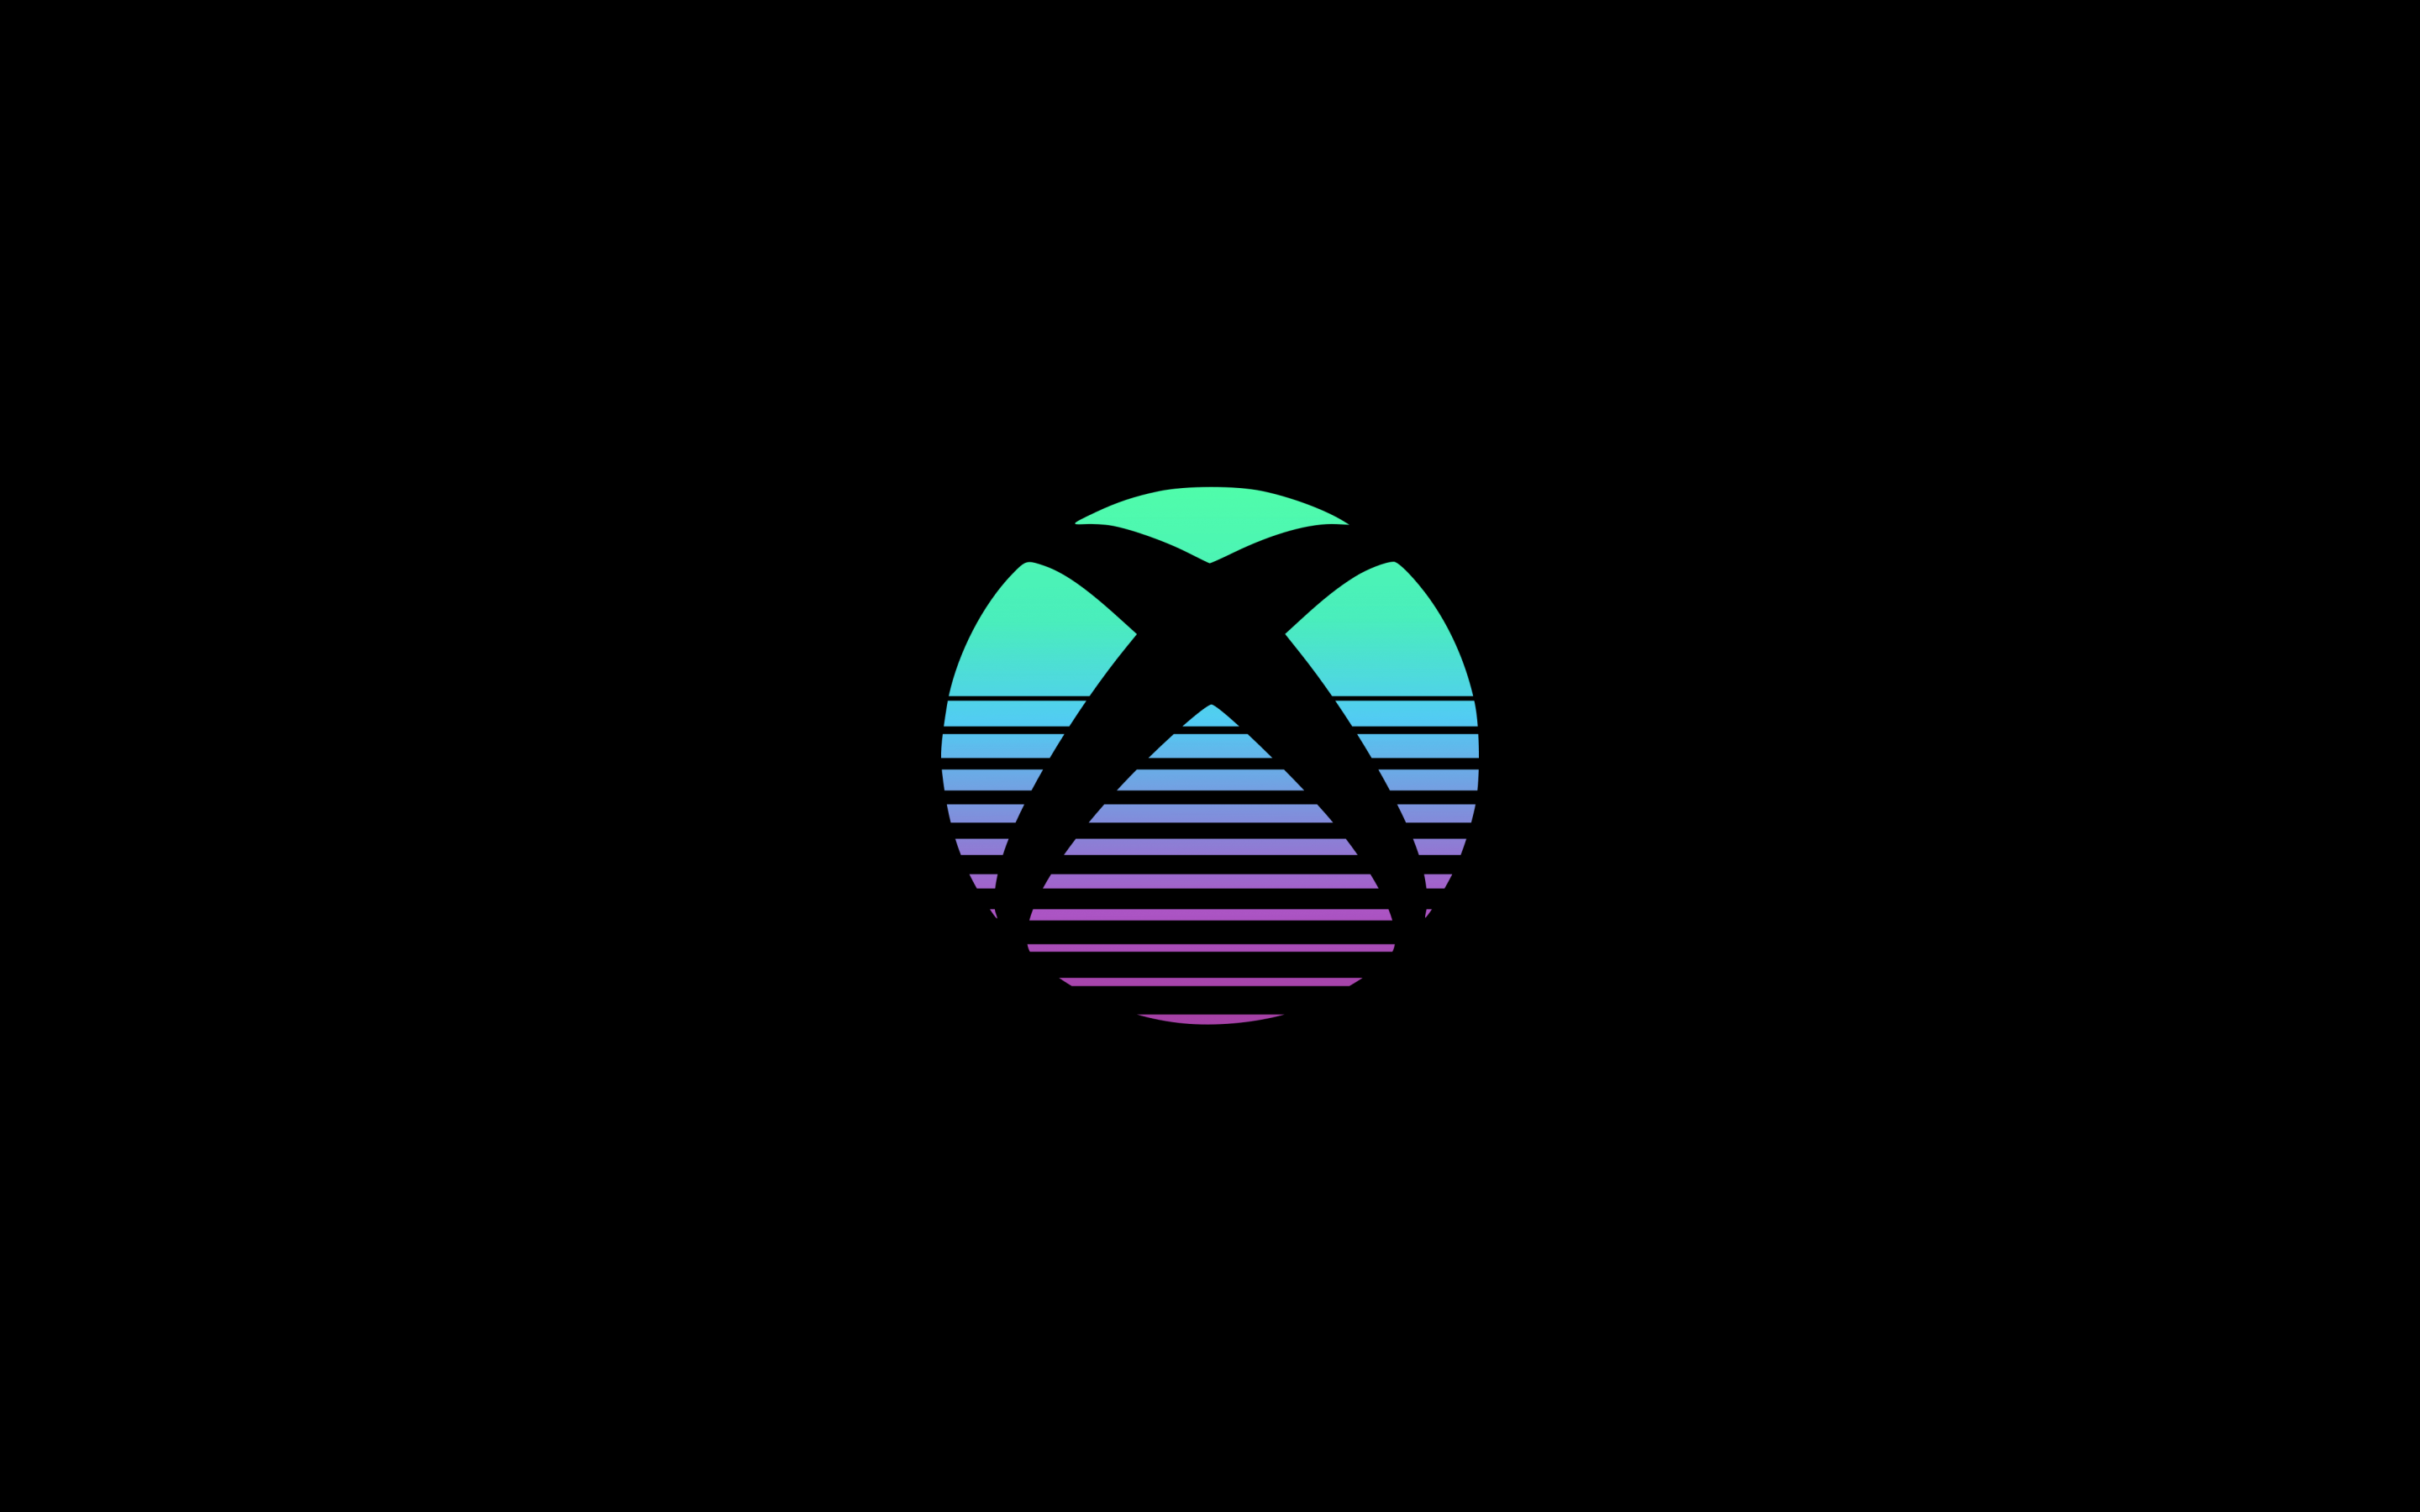 Xbox Wallpaper 4K sẽ làm hài lòng tất cả những người yêu thích công nghệ và game. Những hình ảnh tuyệt đẹp, tinh tế này sẽ giúp bạn cảm thấy mình như đang tham gia vào trò chơi thật sự. Hãy tải ngay những hình nền độc đáo này và trang trí cho chiếc máy chơi game của bạn.